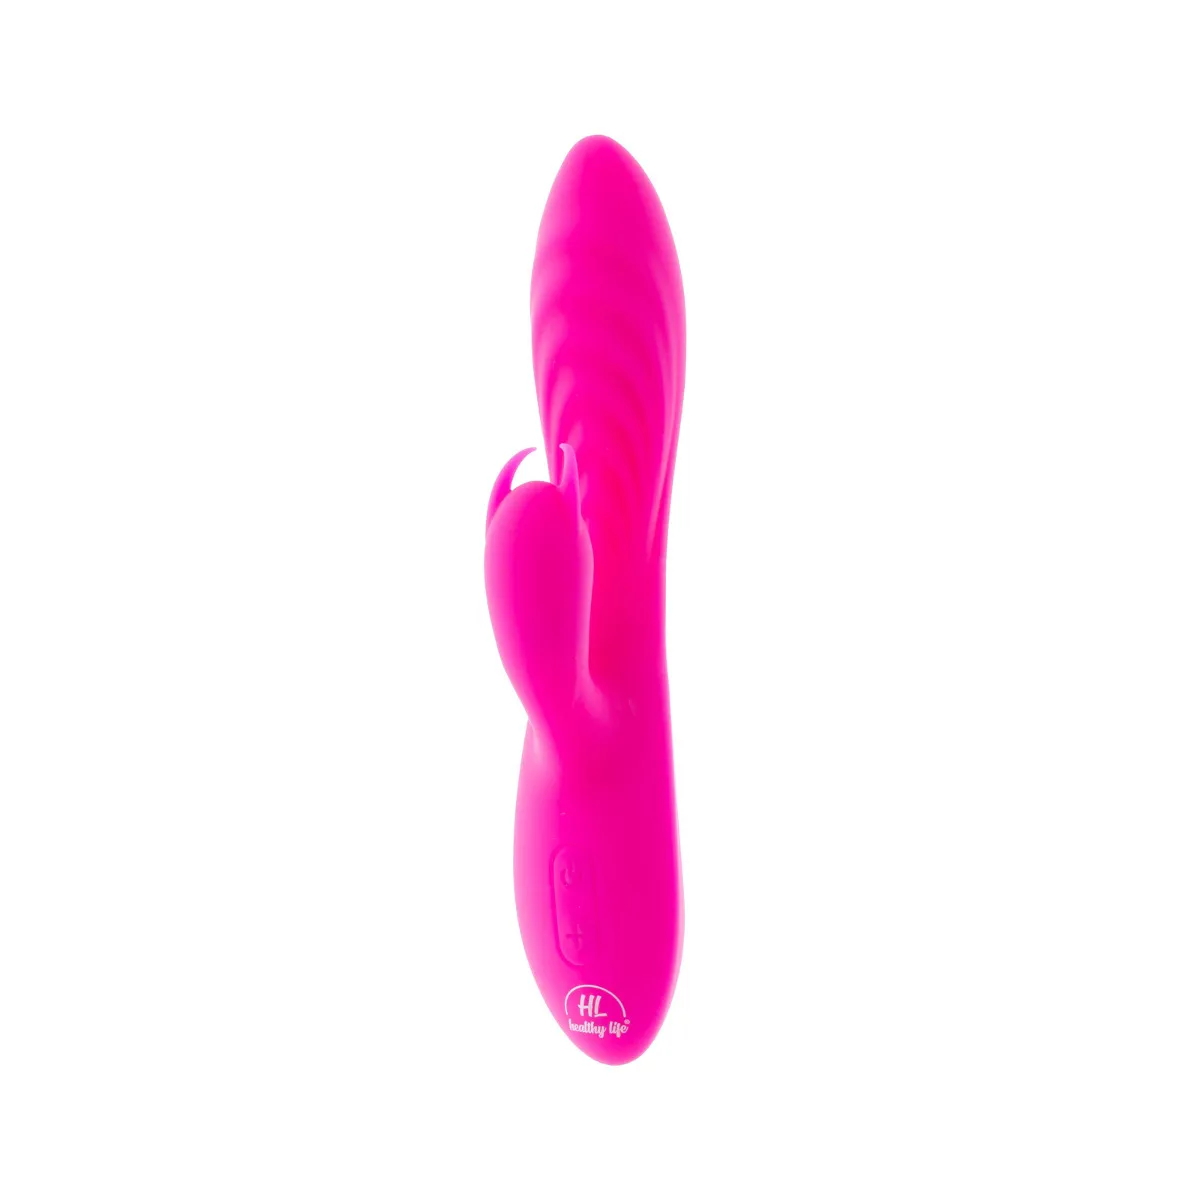 Healthy Life - Duálny vibrátor Diego ružový 1×1 kus, vibrátor duálny